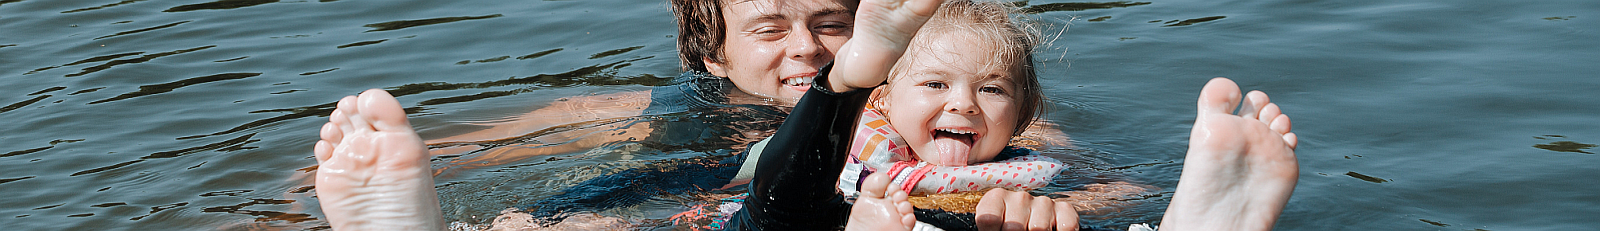 Man teaching small girl to waterboard